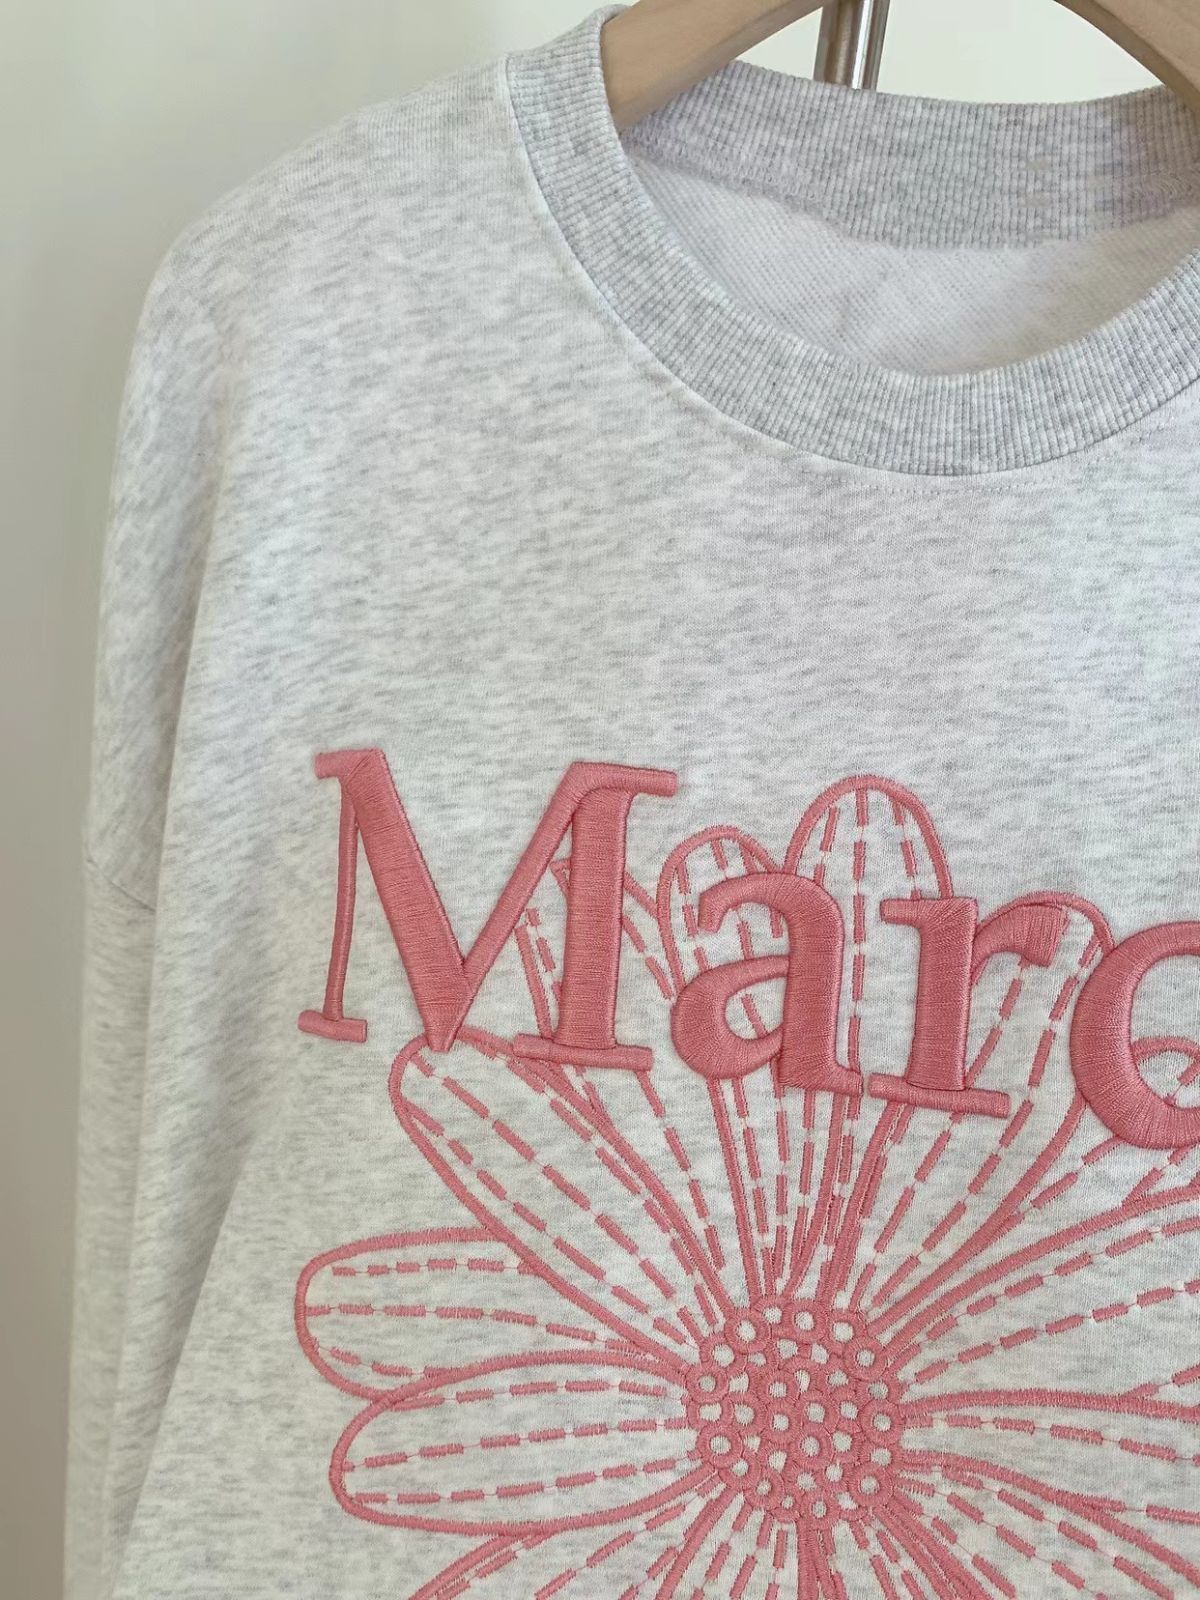 マルディメクルディ Mardi Mercredi トレーナー スウェット 刺繍